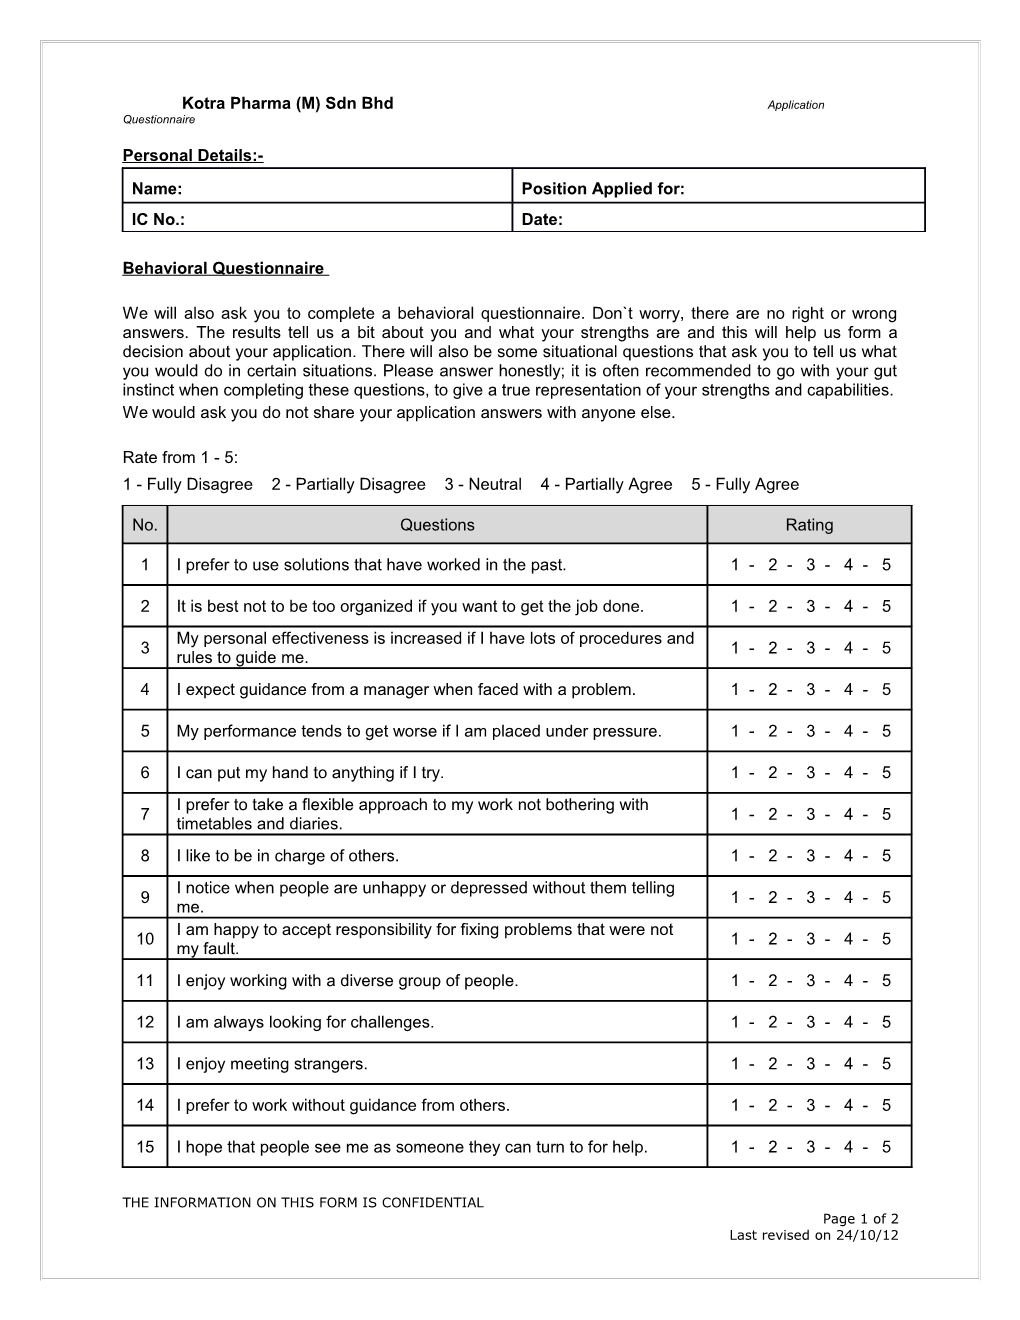 Kotra Pharma (M) Sdn Bhd Application Questionnaire